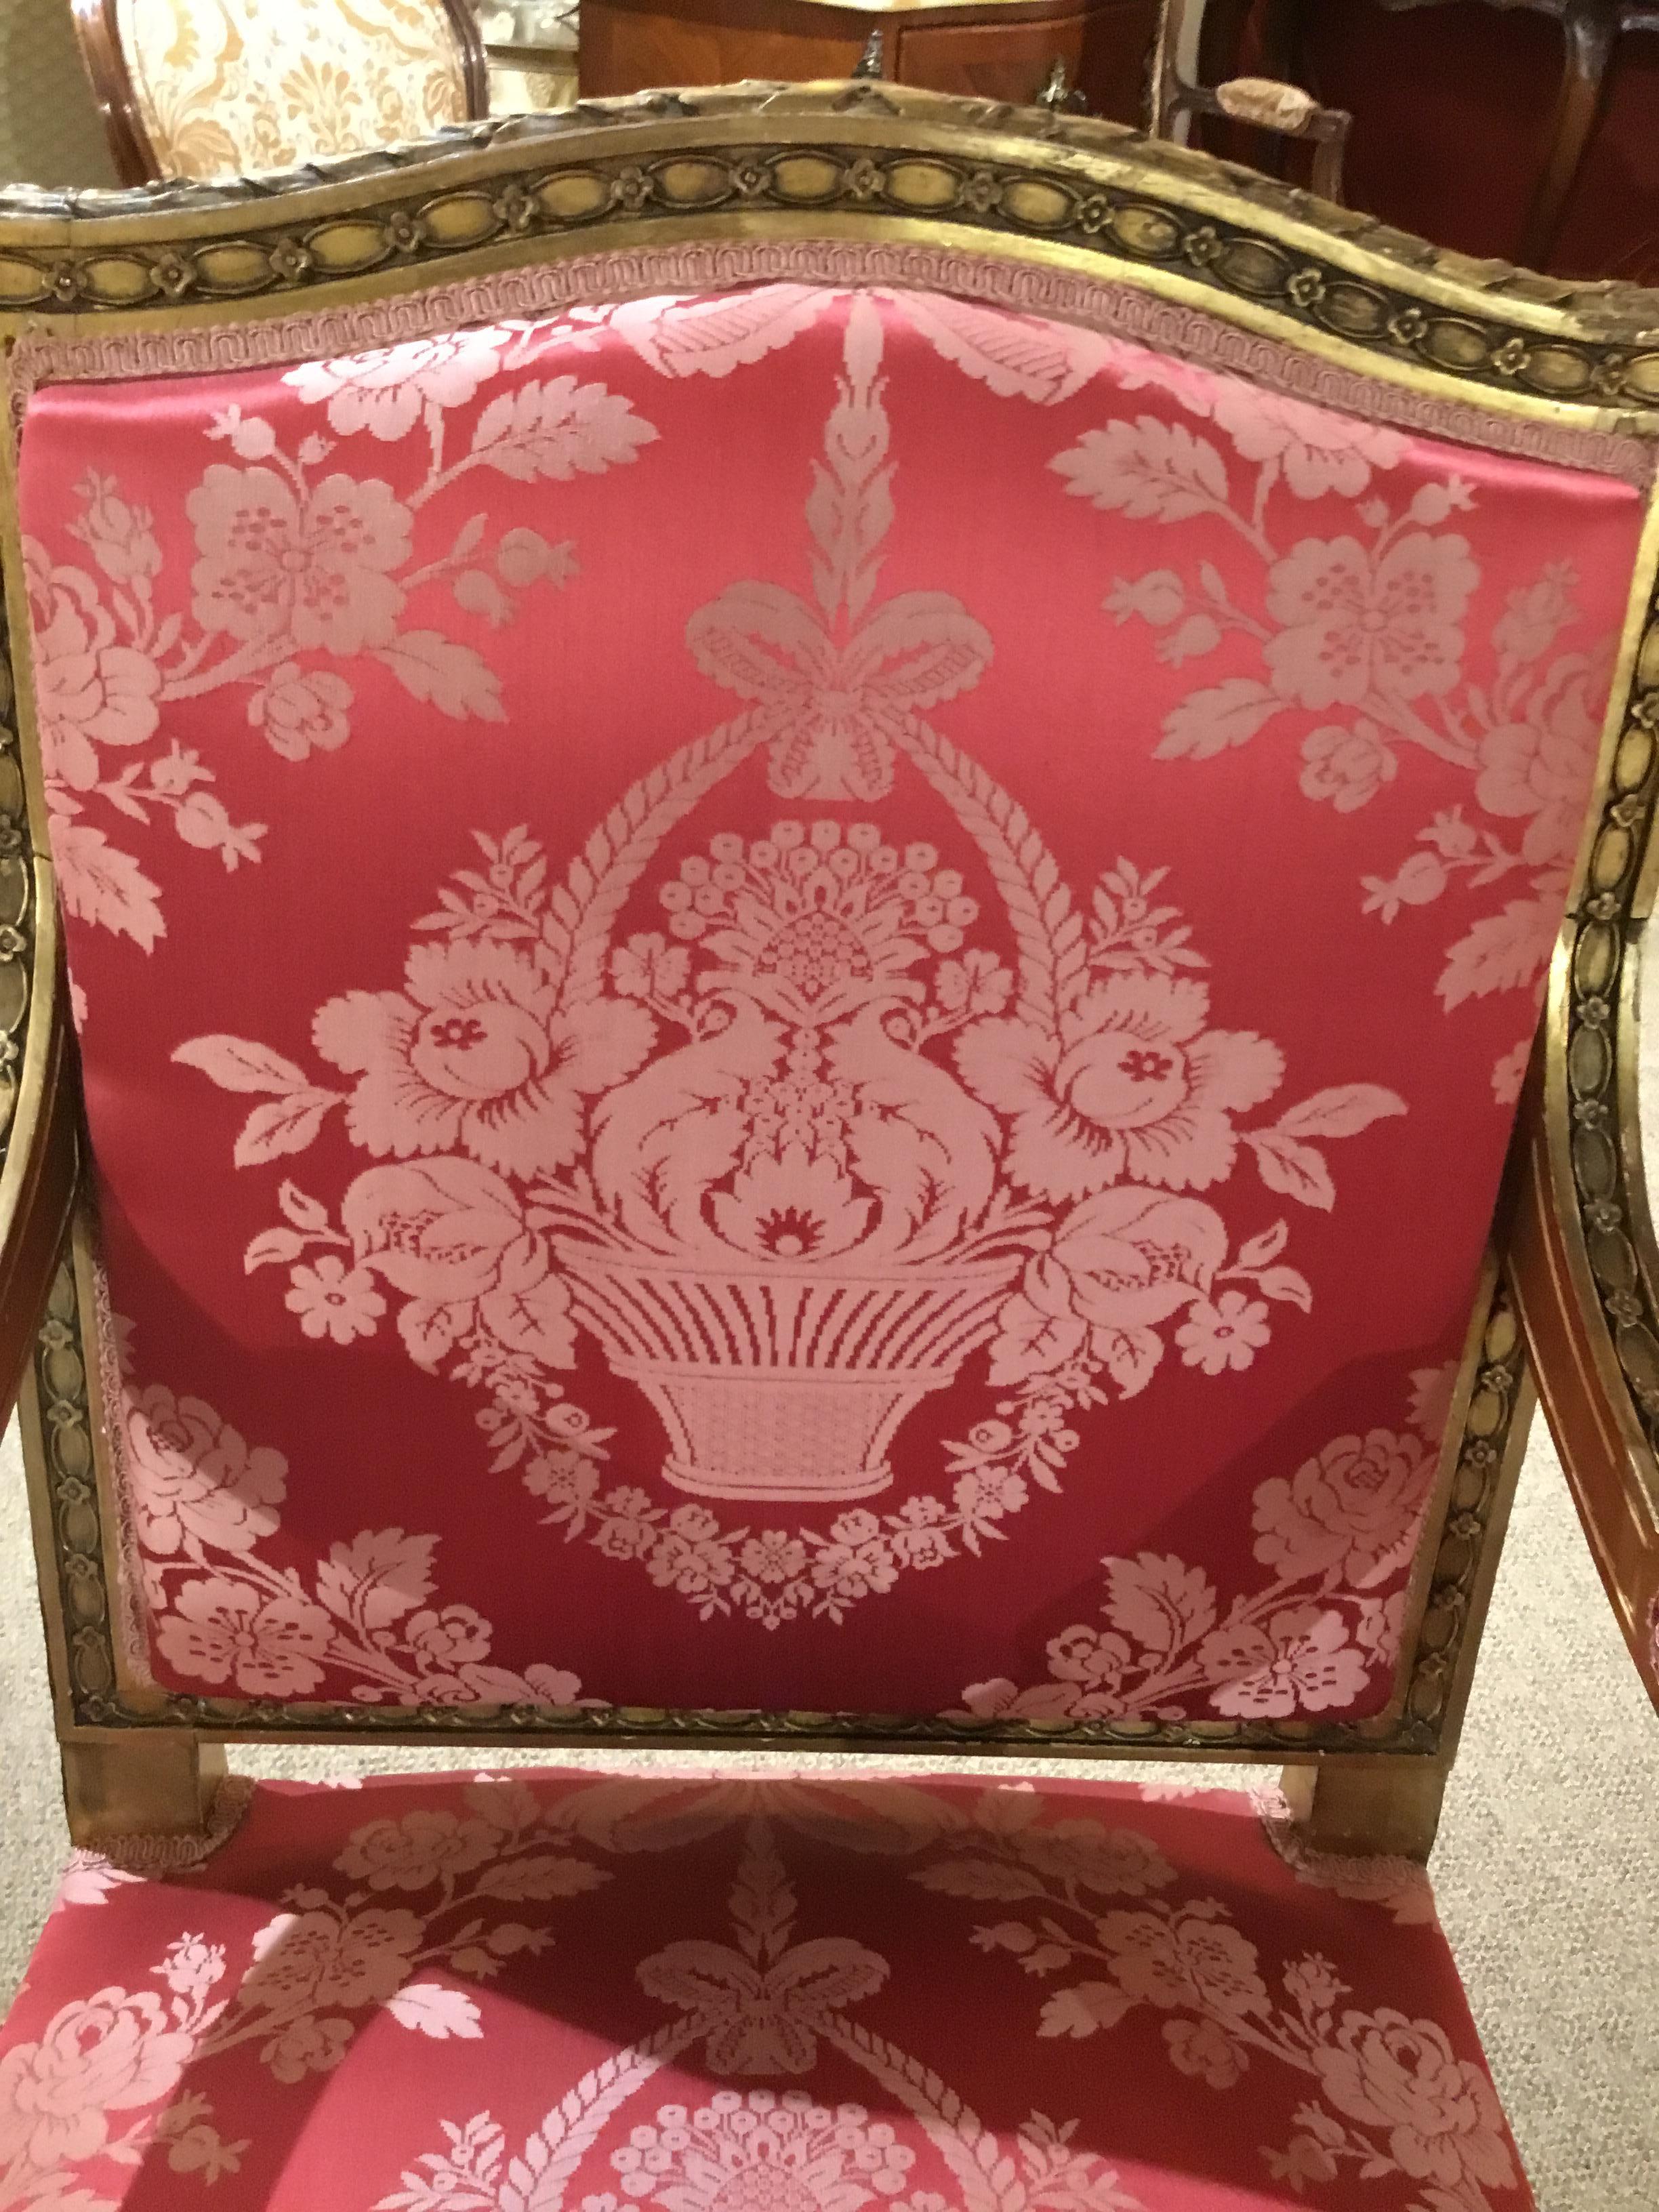 Schönes Paar Sessel im Louis XVI-Stil mit quadratischer Rückenlehne mit leichtem Oval in der Mitte der Rückenlehne. Die vergoldete Oberfläche weist eine sanfte Goldpatina auf.
Gepolstert mit rosa Seidendamast. Stoff ohne Flecken oder Probleme. Die